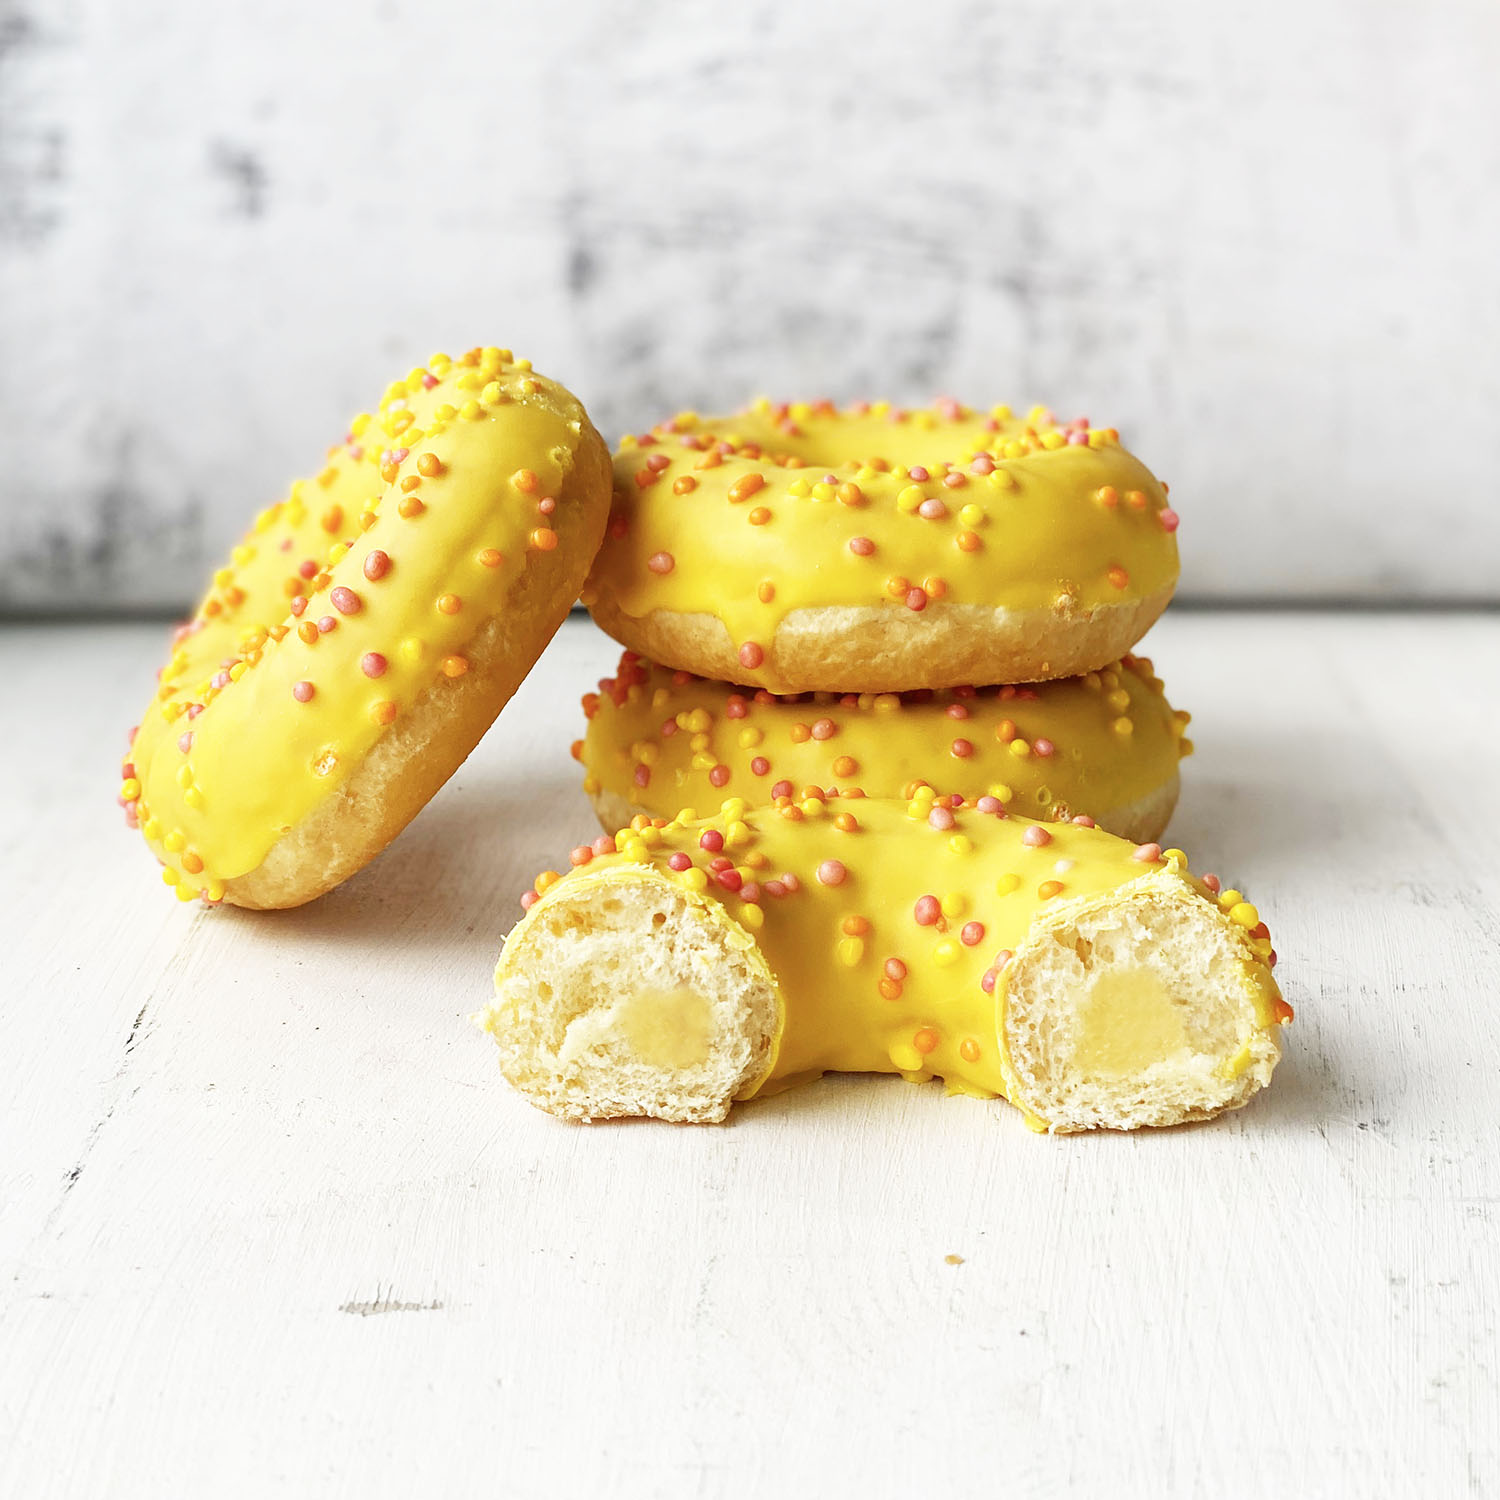 Пончик с желтой глазурью, цветной посыпкой и манговой начинкой изображение 1